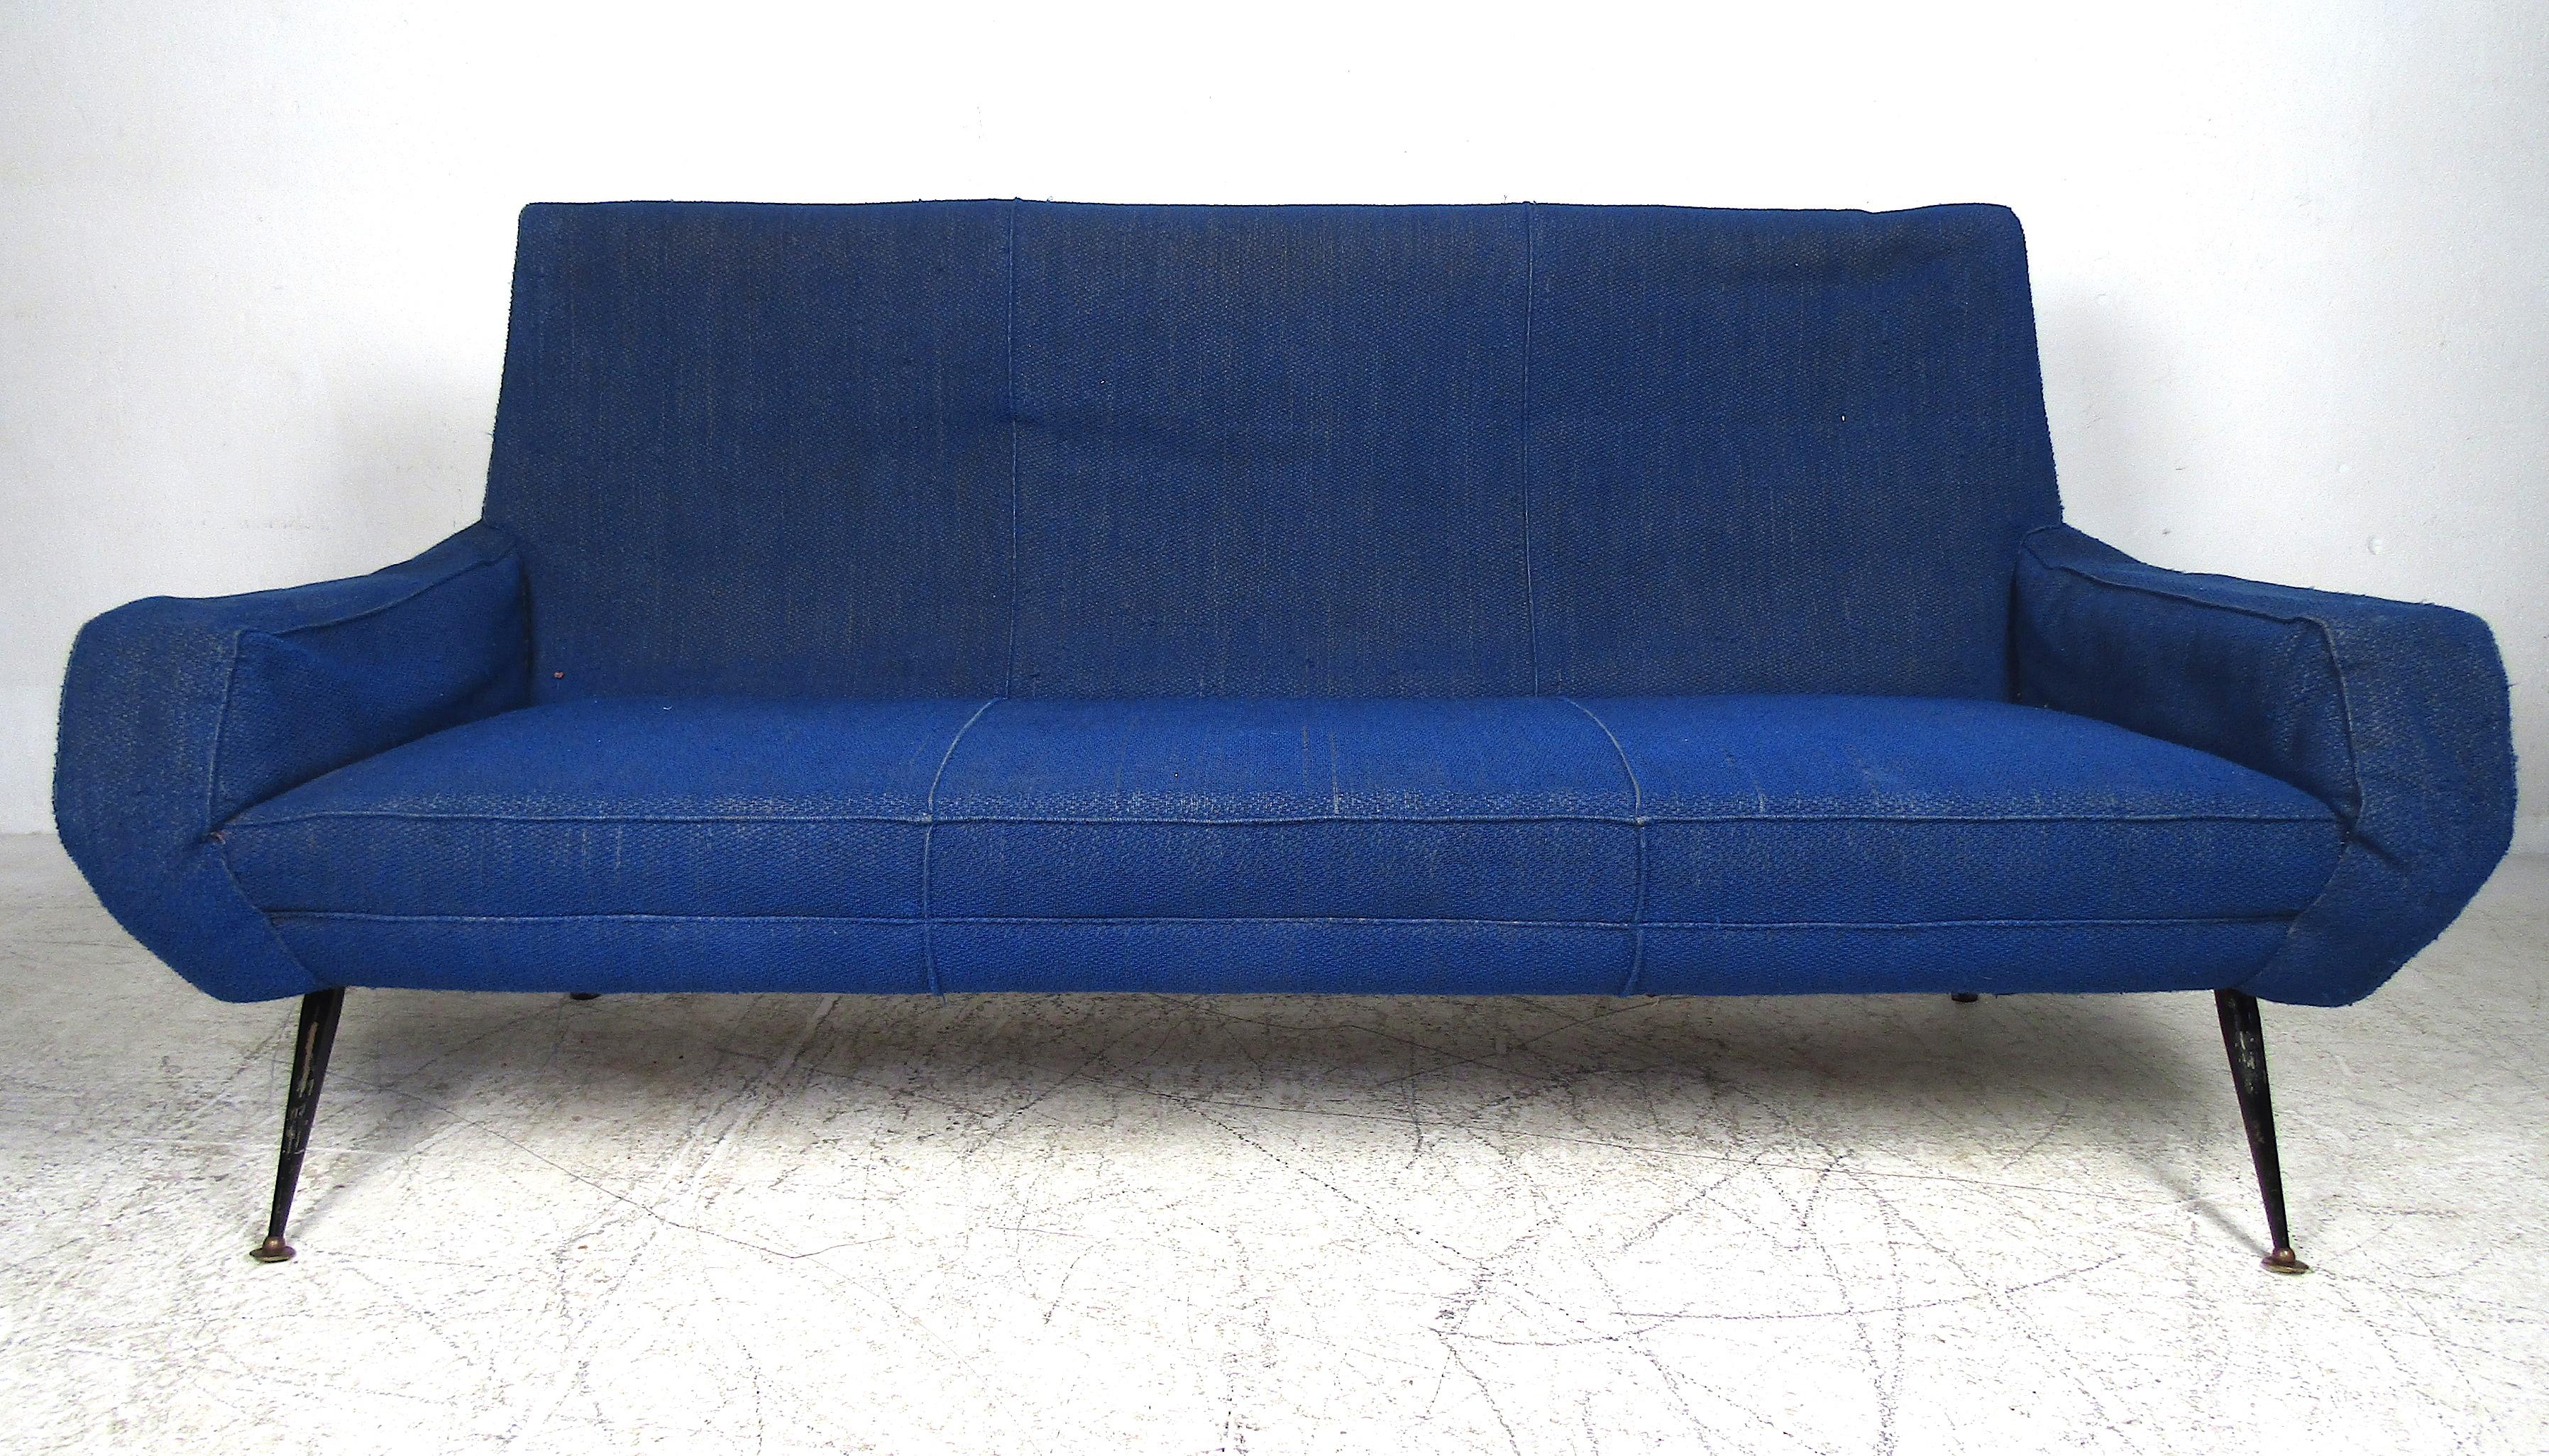 Dieses schöne italienische Sofa zeichnet sich durch seine geschwungenen Armlehnen und die gespreizten Metallbeine aus. Die königsblaue Polsterung bedeckt dick gepolsterte Sitzflächen und sorgt für maximalen Komfort. Dieses einzigartige Stück ist